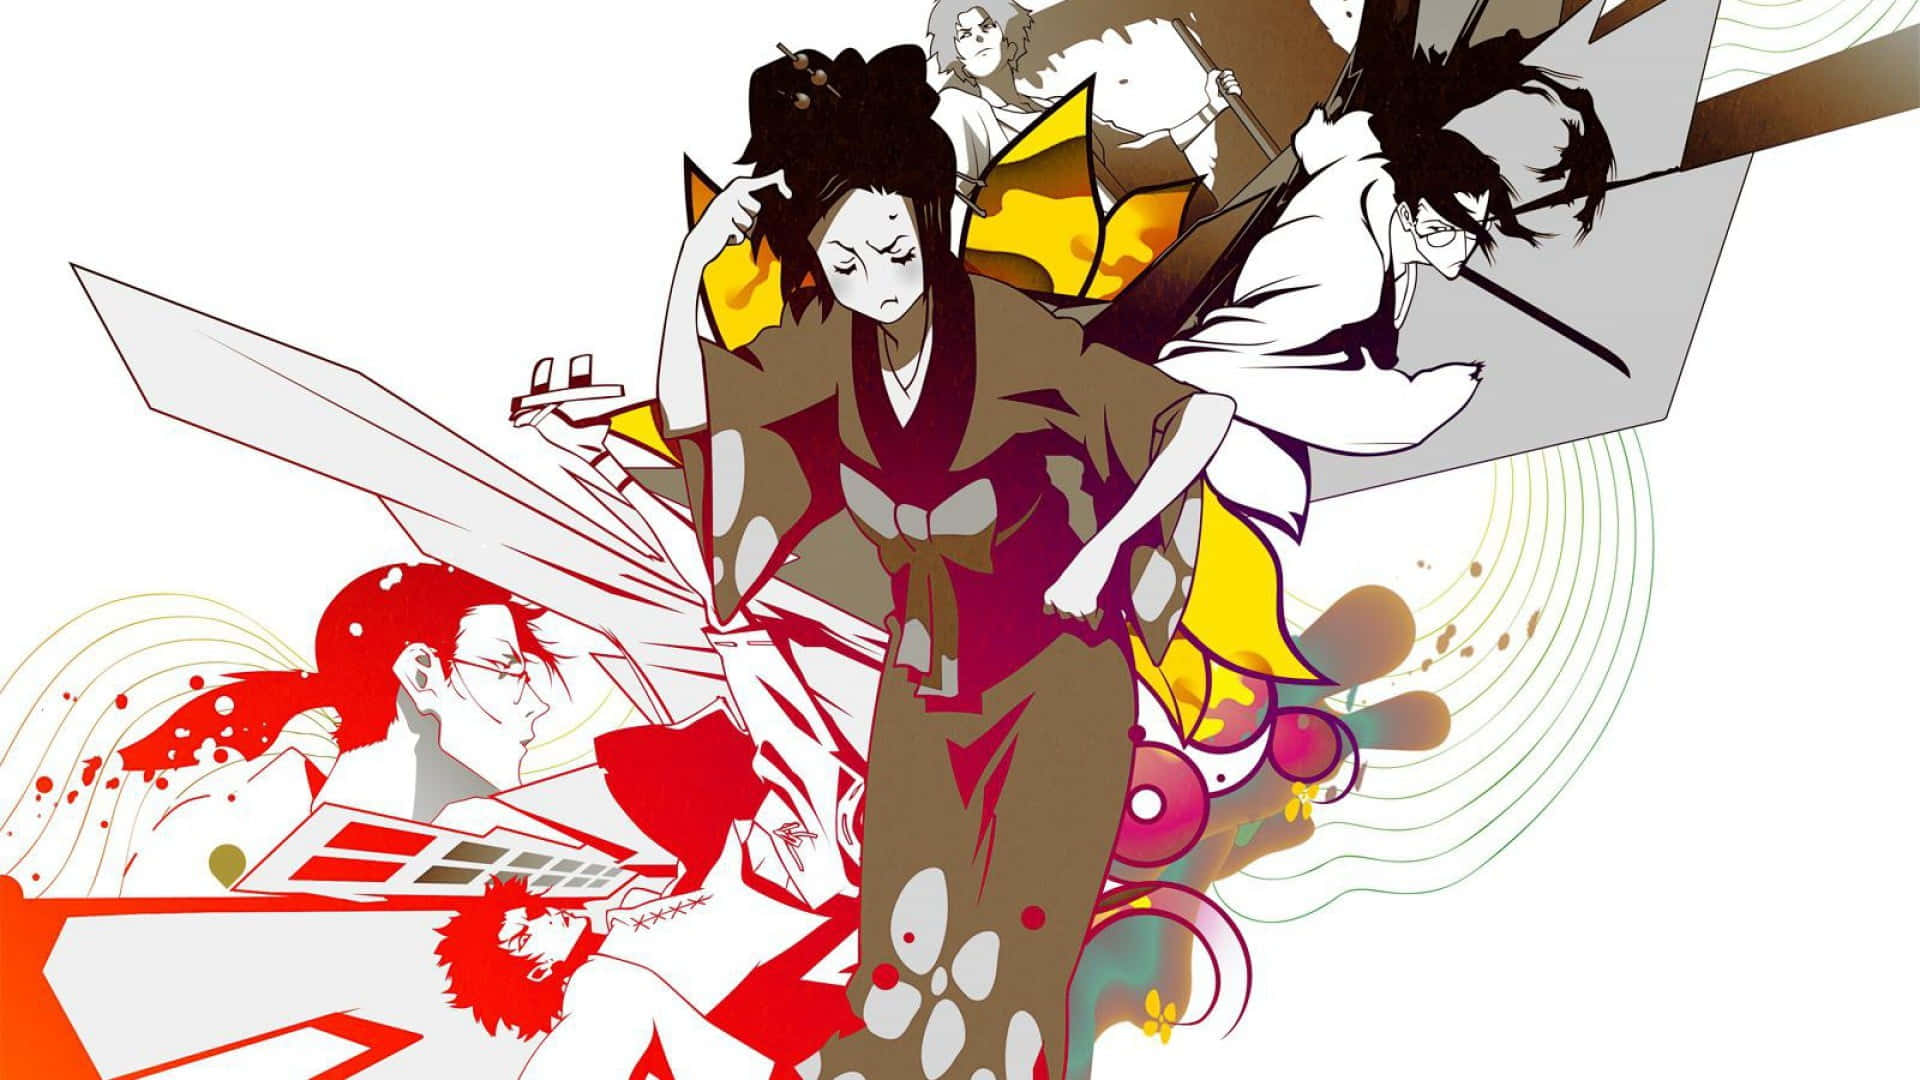 Enklassisk Scene Fra Samurai Champloo, Hvor Mugen, Fuu Og Jin Demonstrerer Deres Katana-færdigheder.